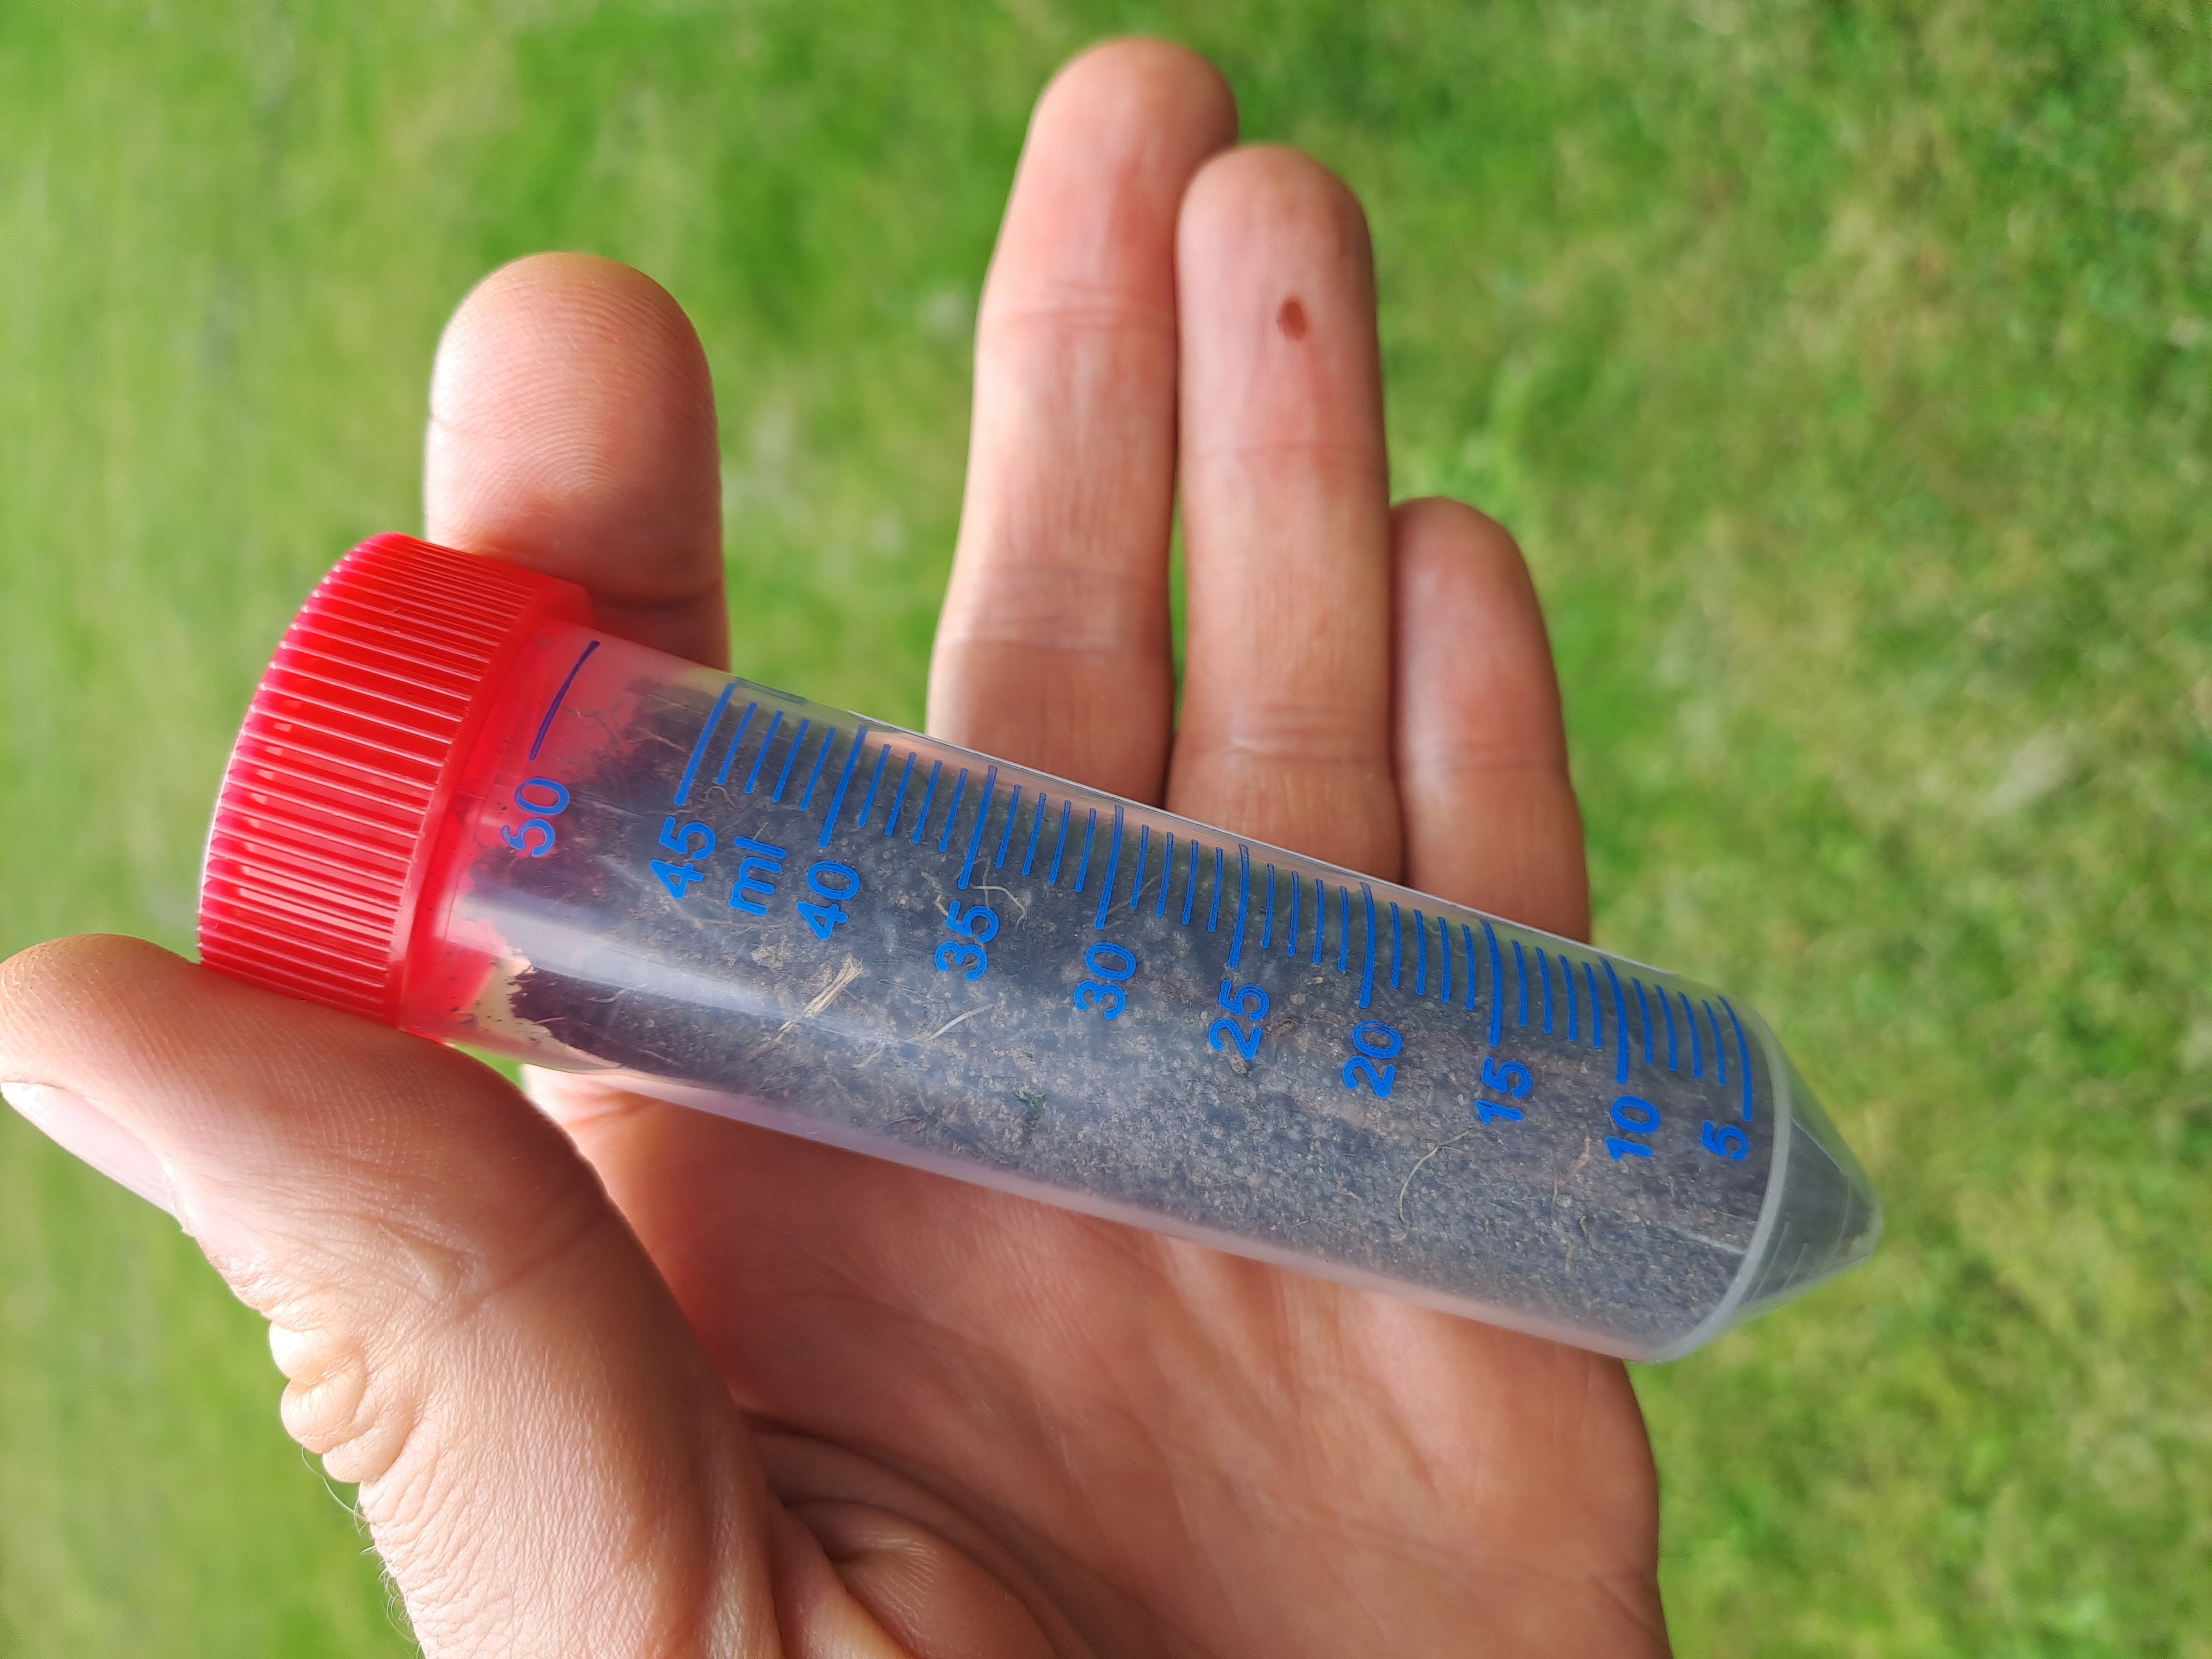 A full sample tube